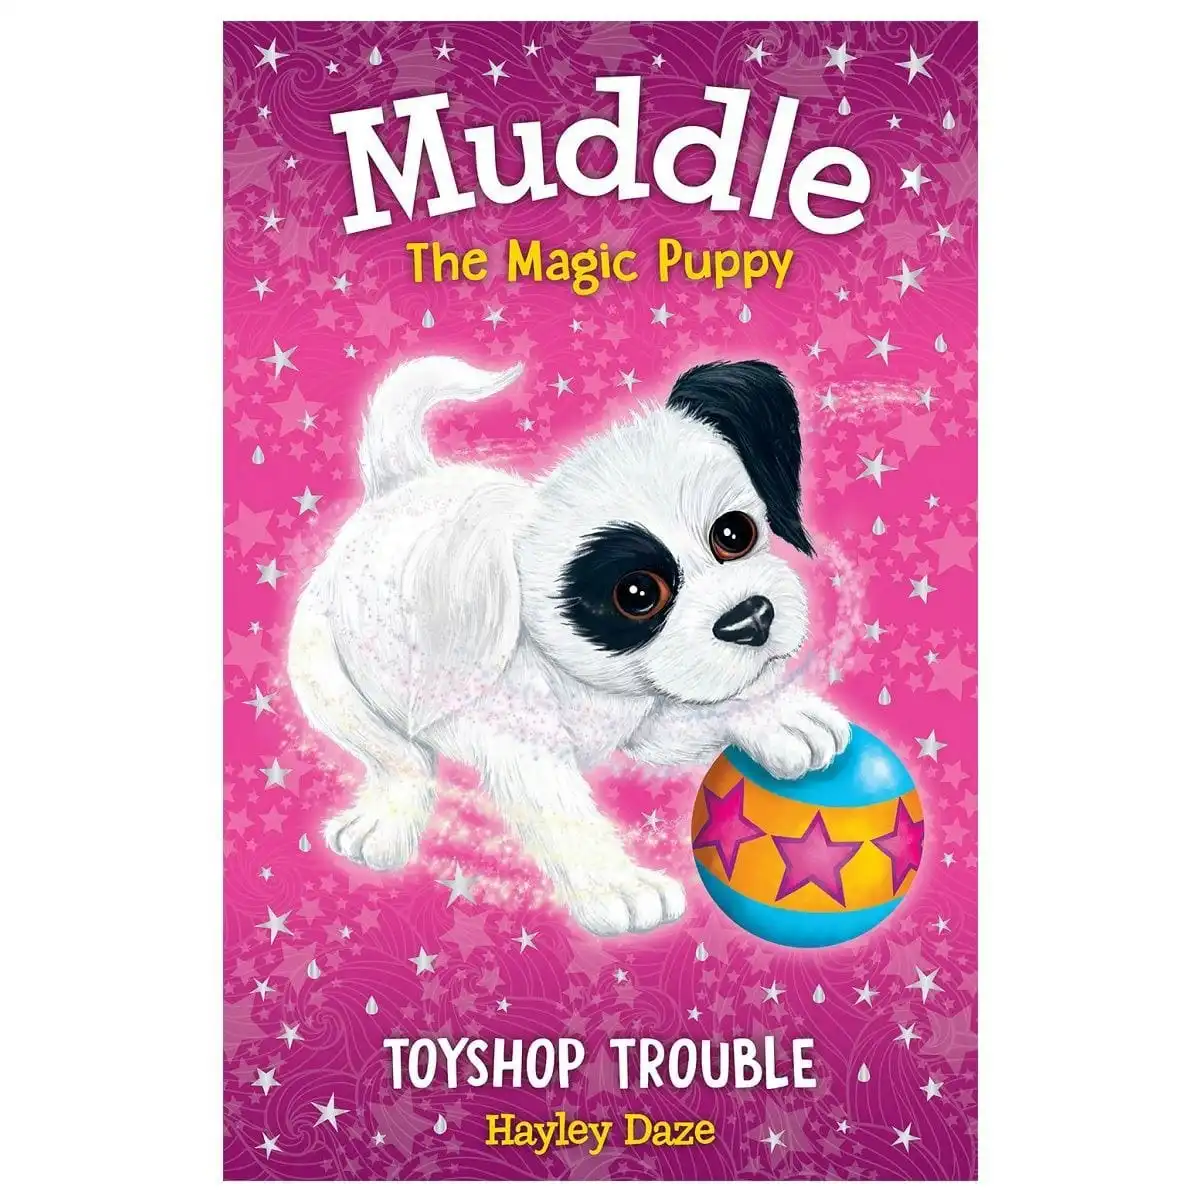 Promotional Muddle The Magic Puppy: Toyshop Trouble